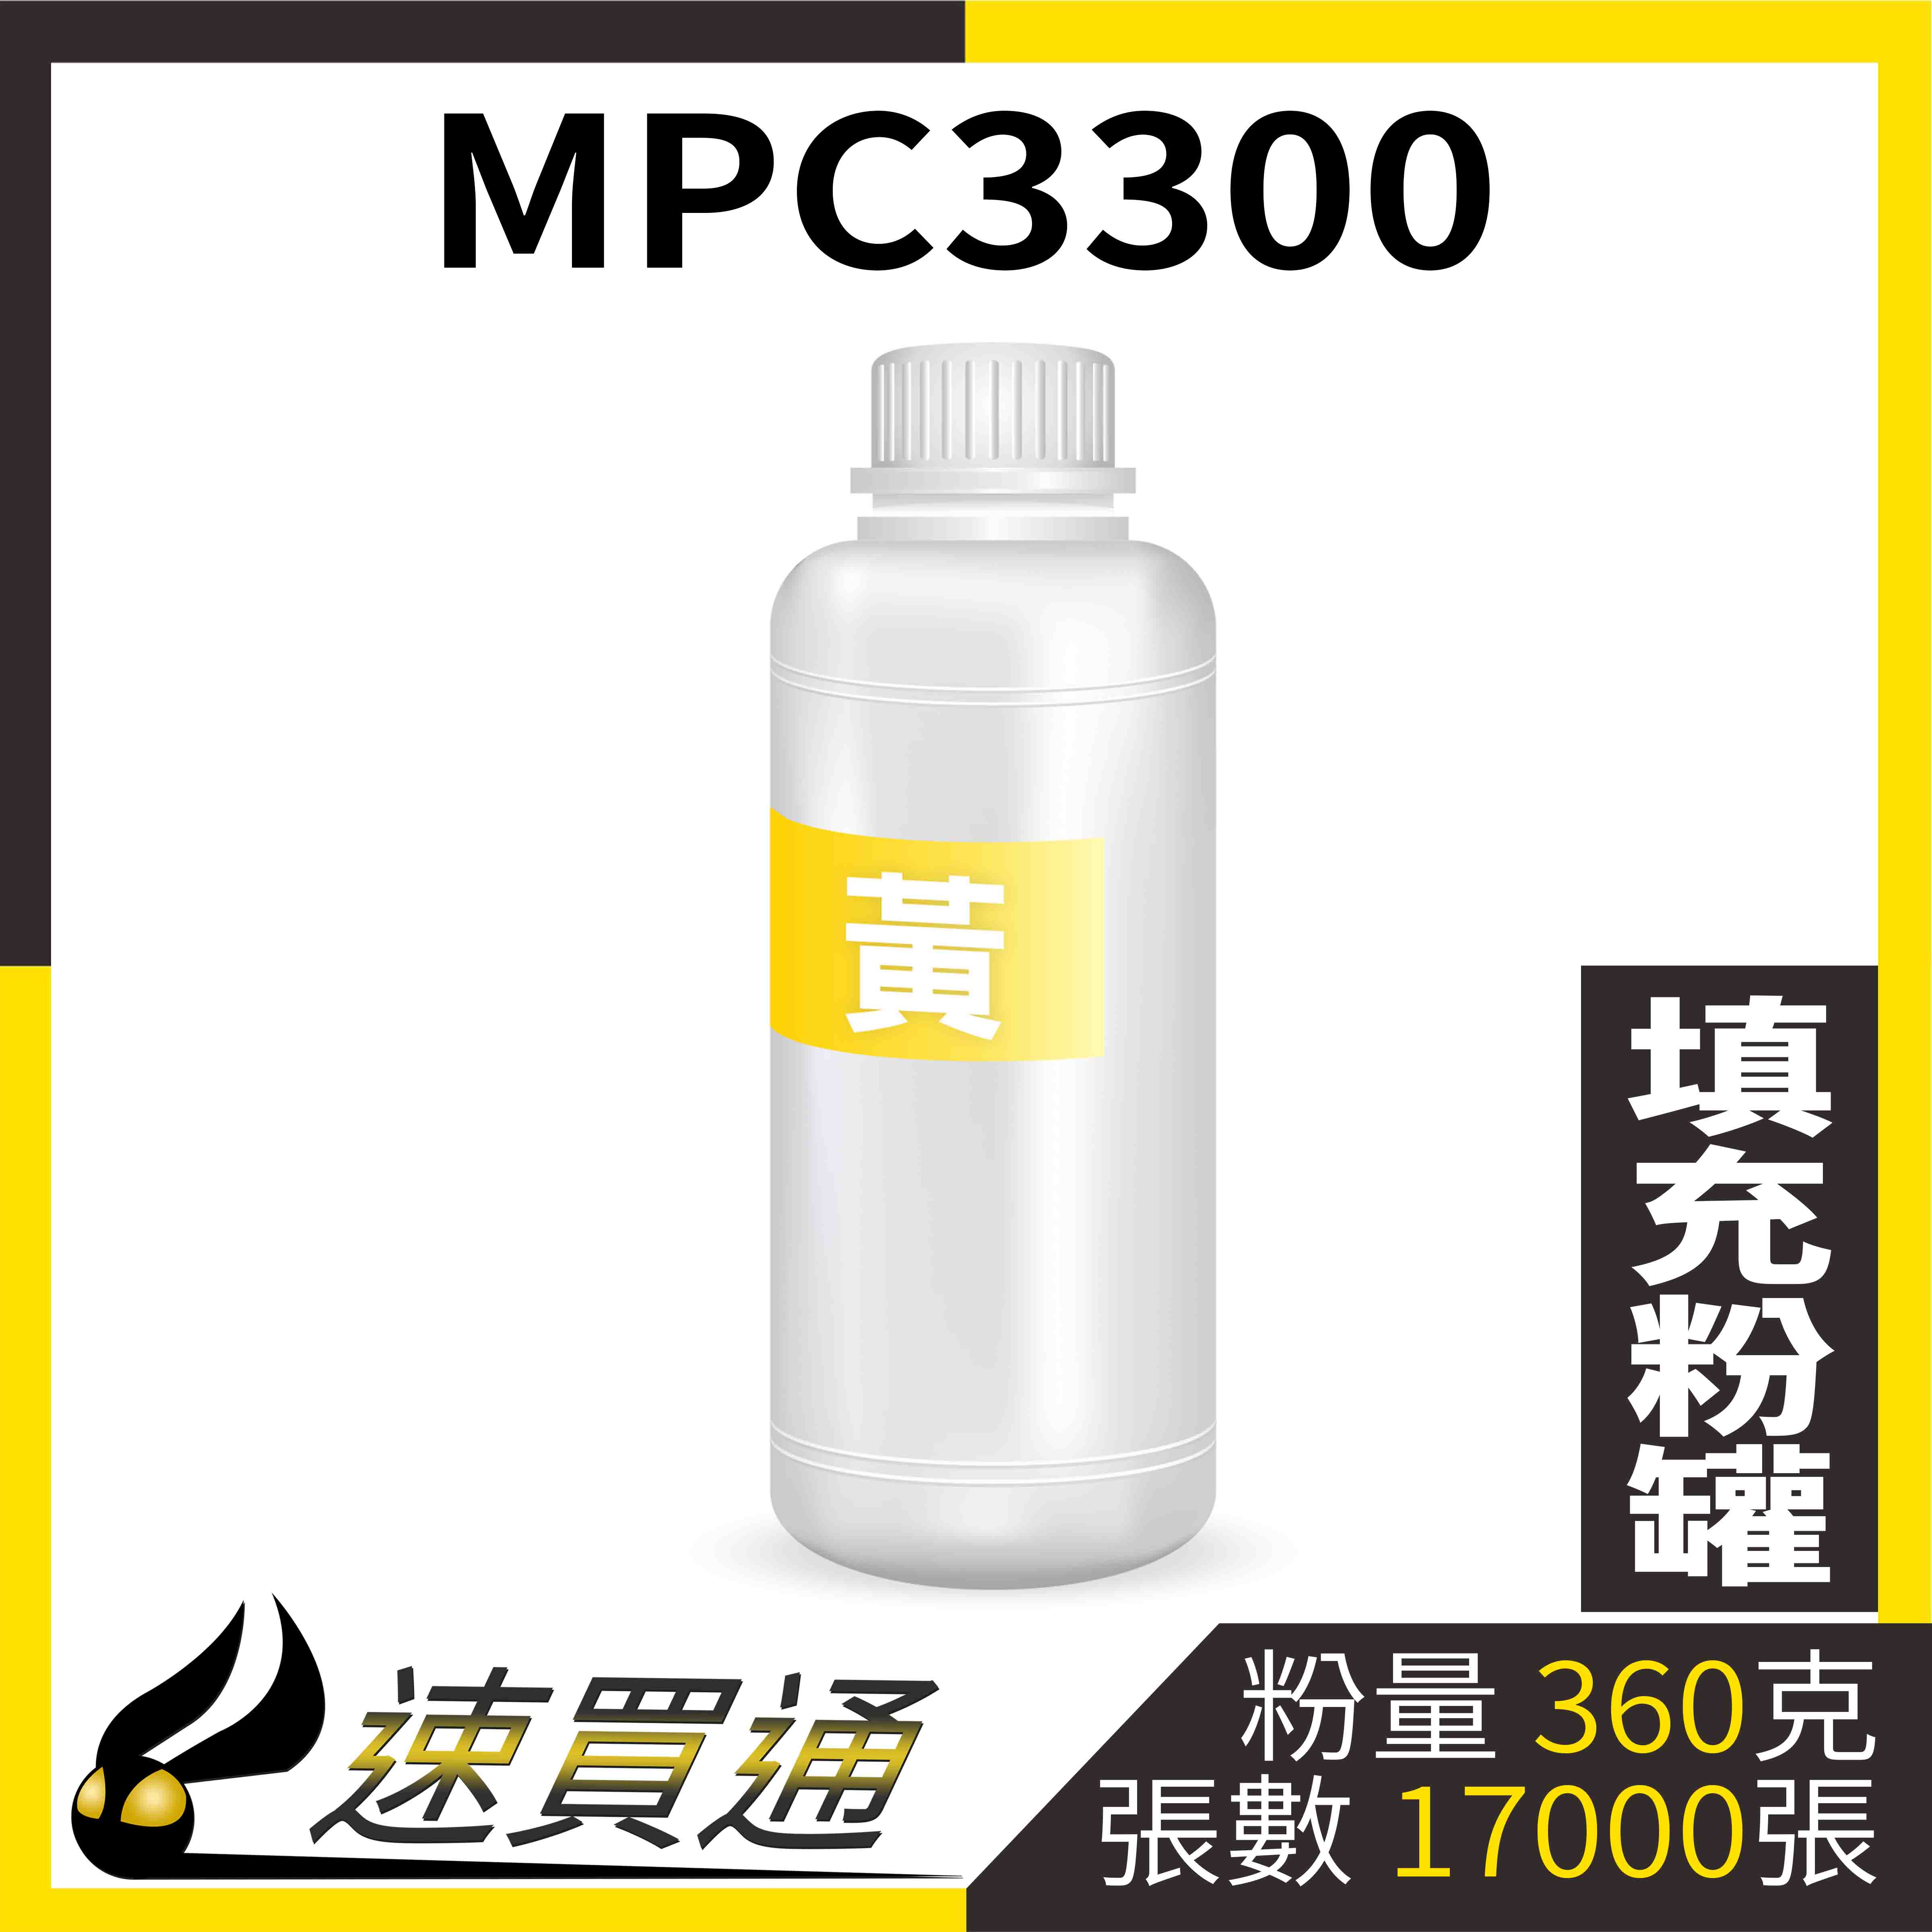 【速買通】RICOH MPC3300 黃 填充式碳粉罐